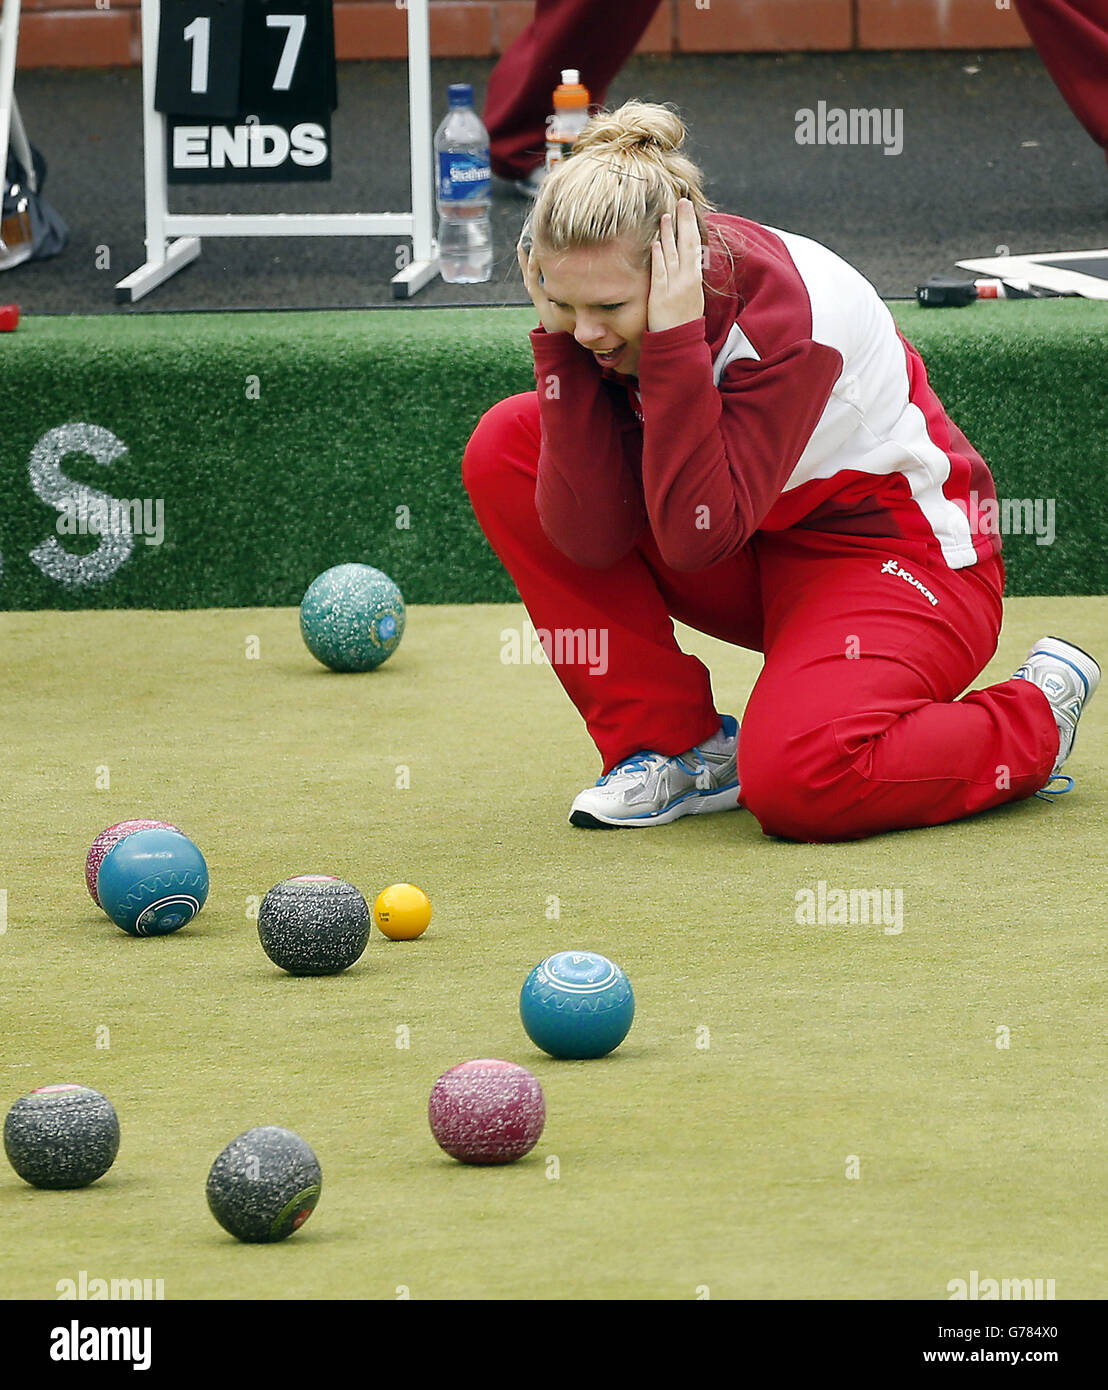 Jamie-Lea Winch durante la final Women's Pairs en el Kelvingrove Lawn Bowls Center, durante los Juegos del Commonwealth de 2014 en Glasgow. Foto de stock